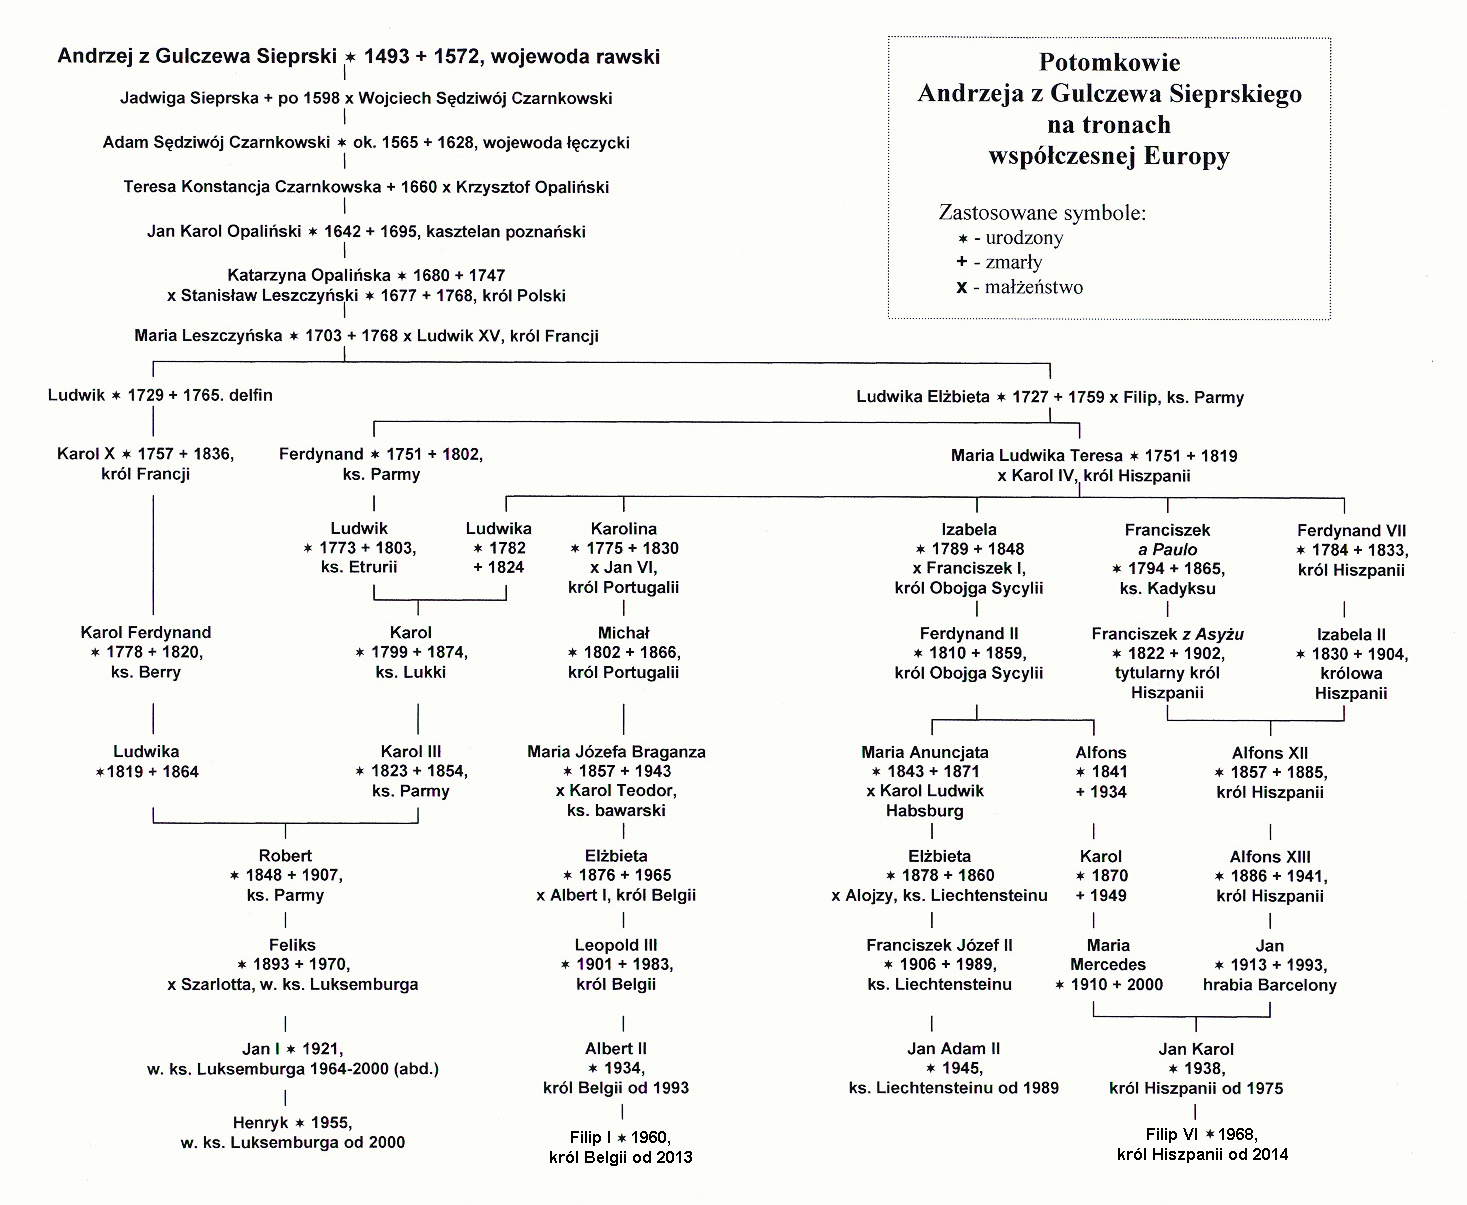 Tablica genealogiczna pokazujca pochodzenie obecnych wadcw pastw europejskich od Andrzeja Sieprskiego